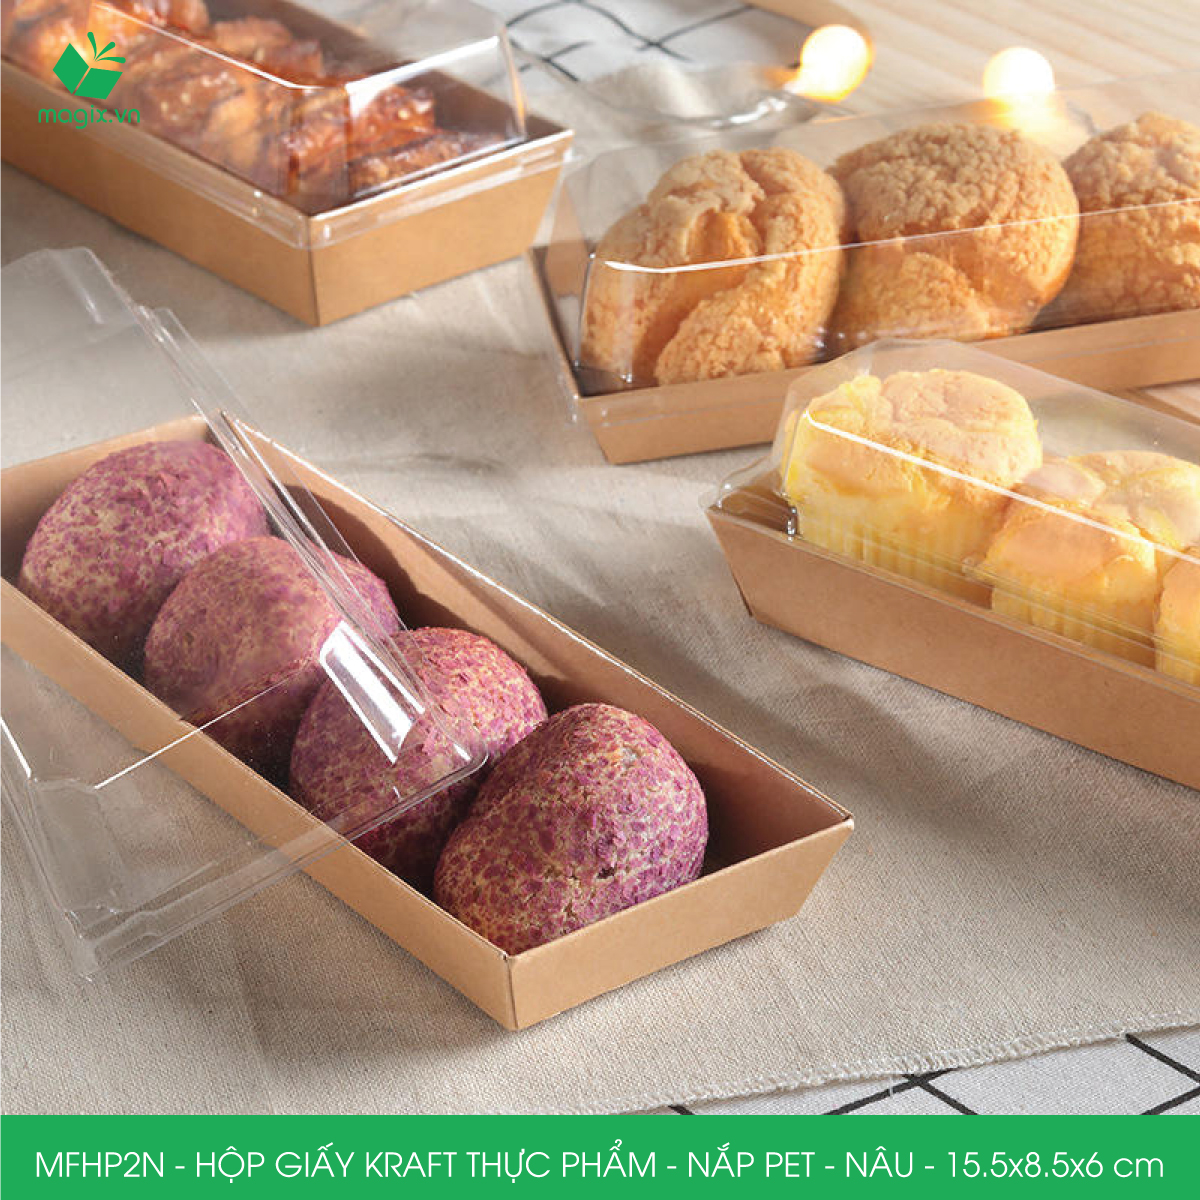 MFHP2N - 15.5x8.5x6 cm - 50 hộp giấy kraft thực phẩm màu nâu nắp Pet, hộp giấy chữ nhật đựng thức ăn, hộp bánh nắp trong